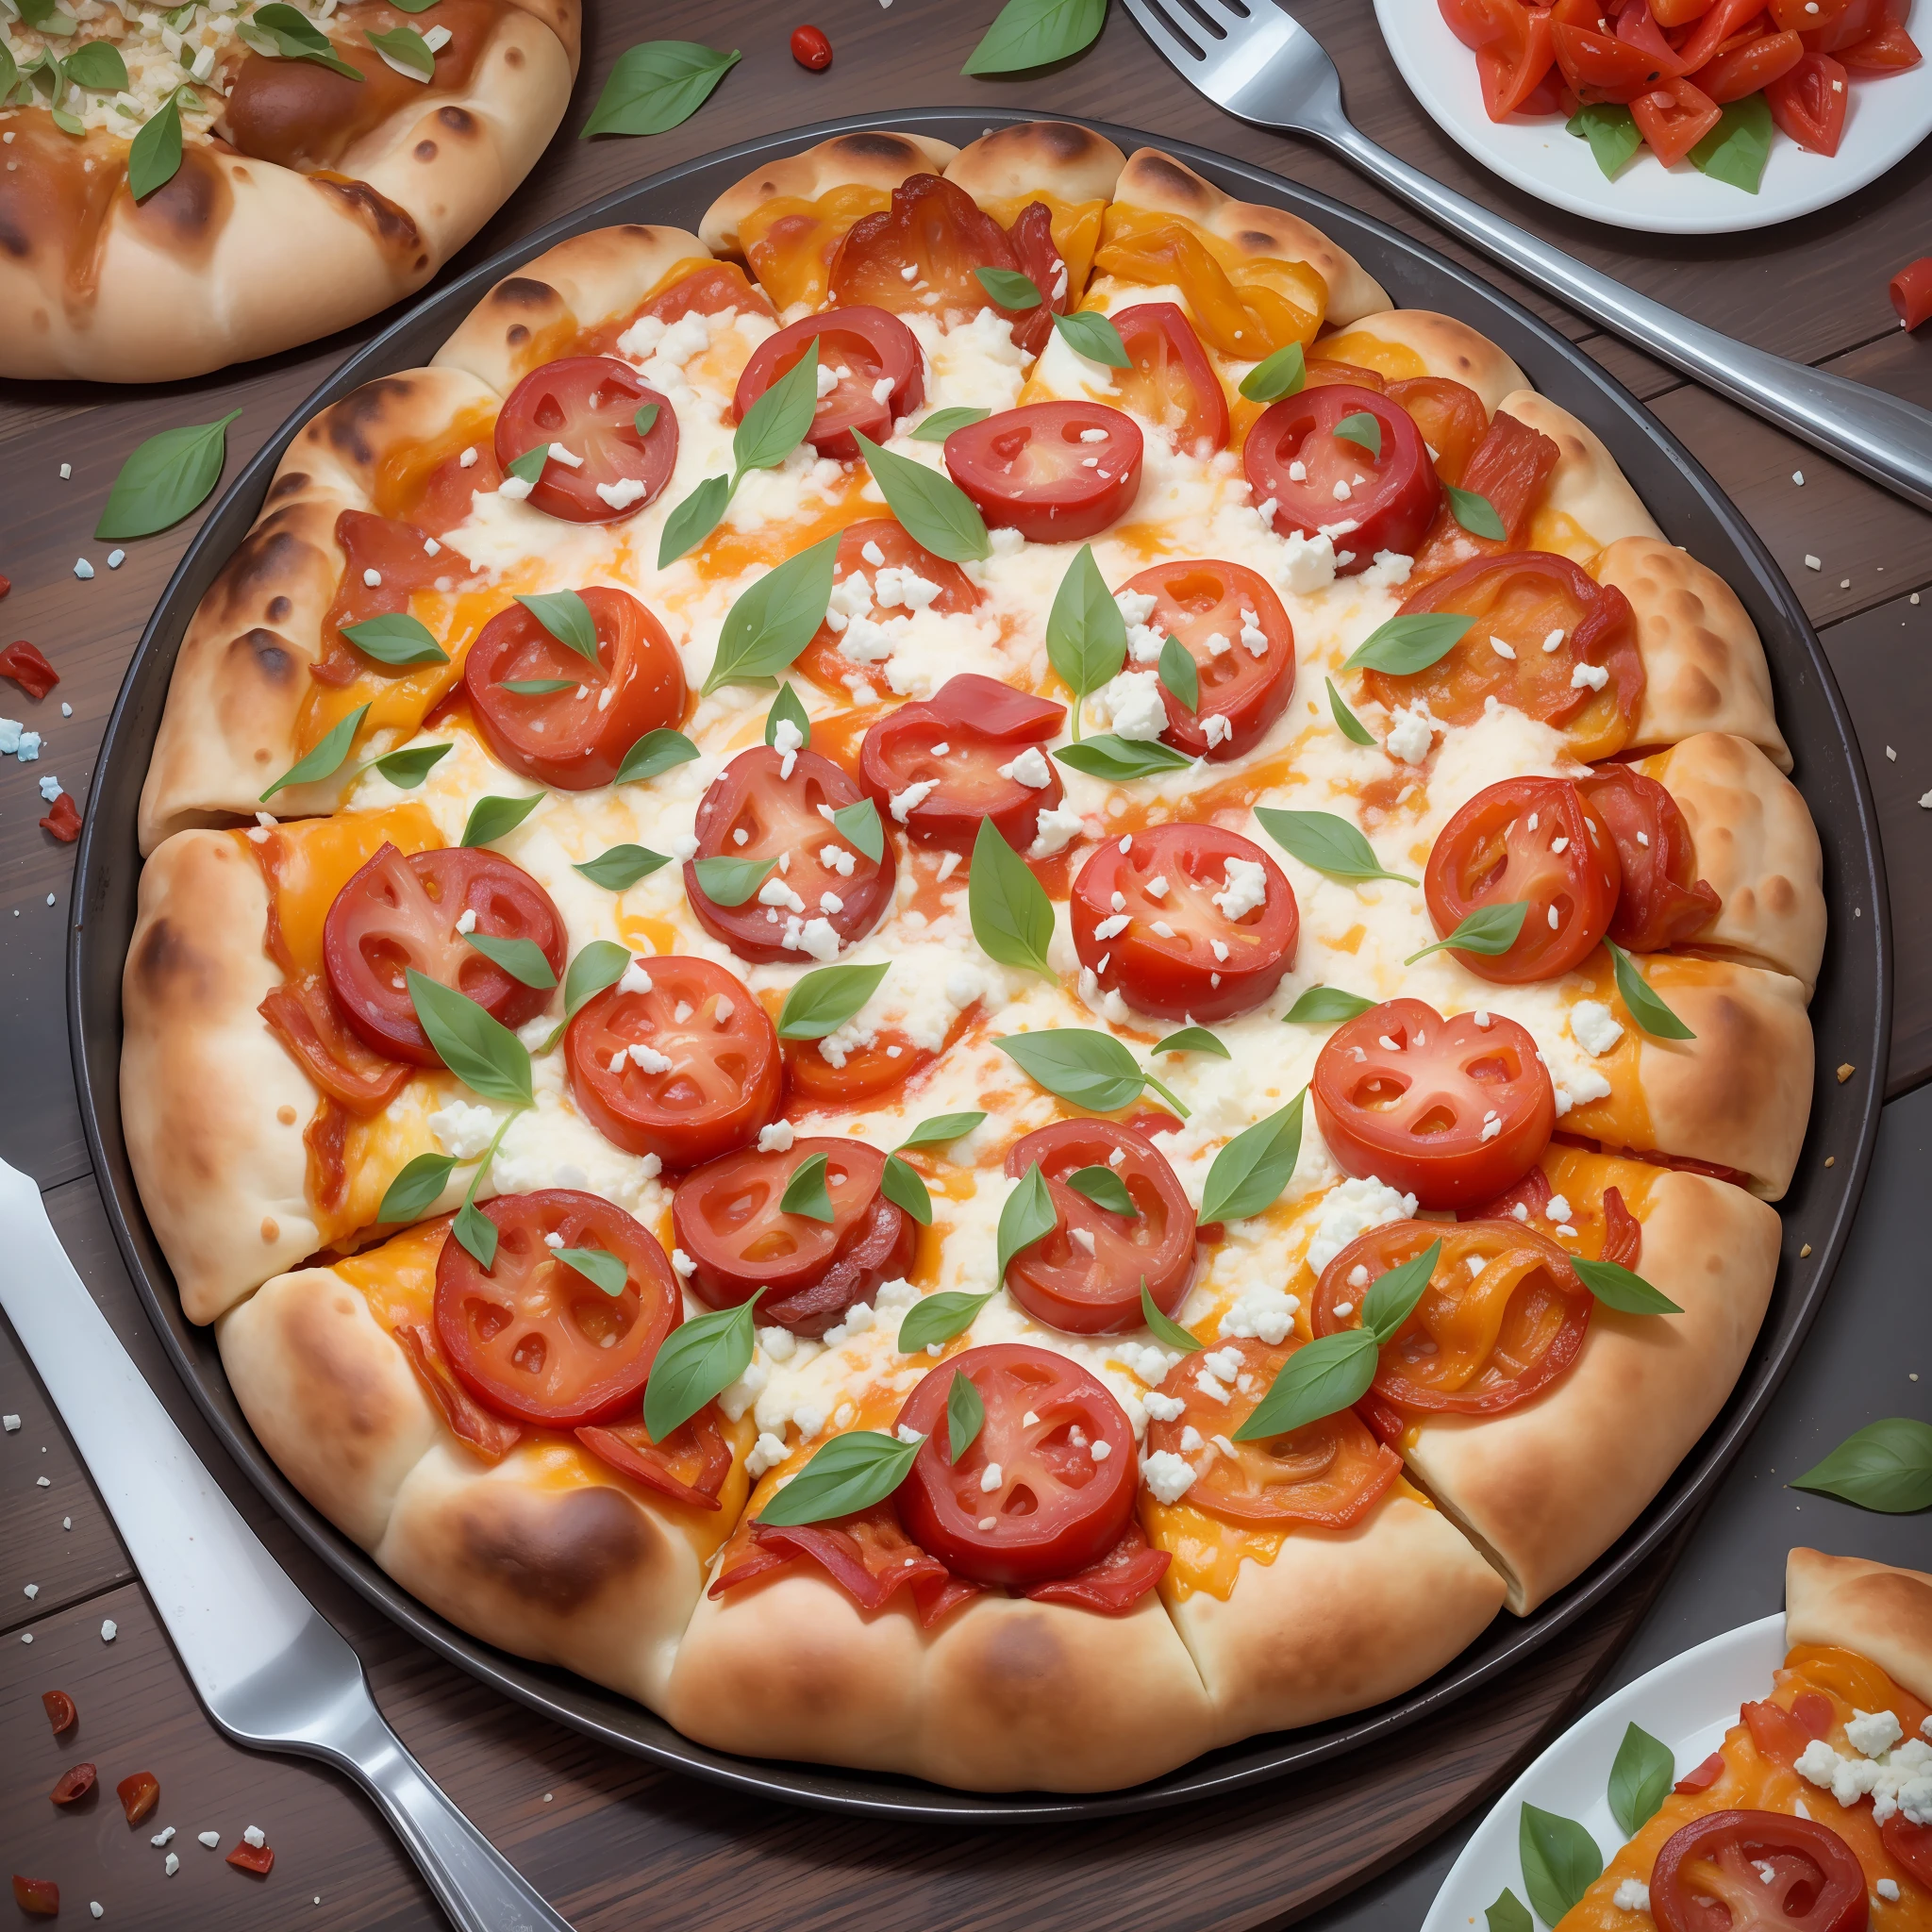 # eine großartige und farbenfrohe Pizza, vor der Kulisse des antiken Pompeji. Der Pizzateig dient als lebendige Leinwand für eine Mischung aus Gourmet-Belägen. zuerst, wir haben eine goldene, sprudelnde Schicht Mozzarella. Nächste, es gibt rote, saftige Tomatenscheiben, verstreut mit einem Hauch von frischem, grünem Basilikum. Es gibt großzügige Mengen an karamellisierten Zwiebeln, Pilze, und Paprika in Rottönen, Gelb, und Grün.Die Parade der Aromen wird fortgesetzt durch die herzhaften, dünn geschnittene Schinkenstücke, Peperoni, und knusprigem Speck, gefolgt von einer Prise Blauschimmelkäsekrümel, Frisches Oregano, und rote Chiliflocken für den Extra-Kick. auf der Seite, Dazu gibt es geschnittene schwarze Oliven und marinierte Artischockenherzen.　Das ganze Spektakel sitzt auf einer perfekt gebackenen Kruste, an den Rändern leicht verkohlt. Das Warme, einladendes Glühen aus dem Holzofen erhellt die Szene. im Hintergrund, Die Ruinen von Pompeji stehen still, Mt. Der Vesuv ist riesig, mit einem Himmel, der sanft von der untergehenden Sonne erhellt wird.